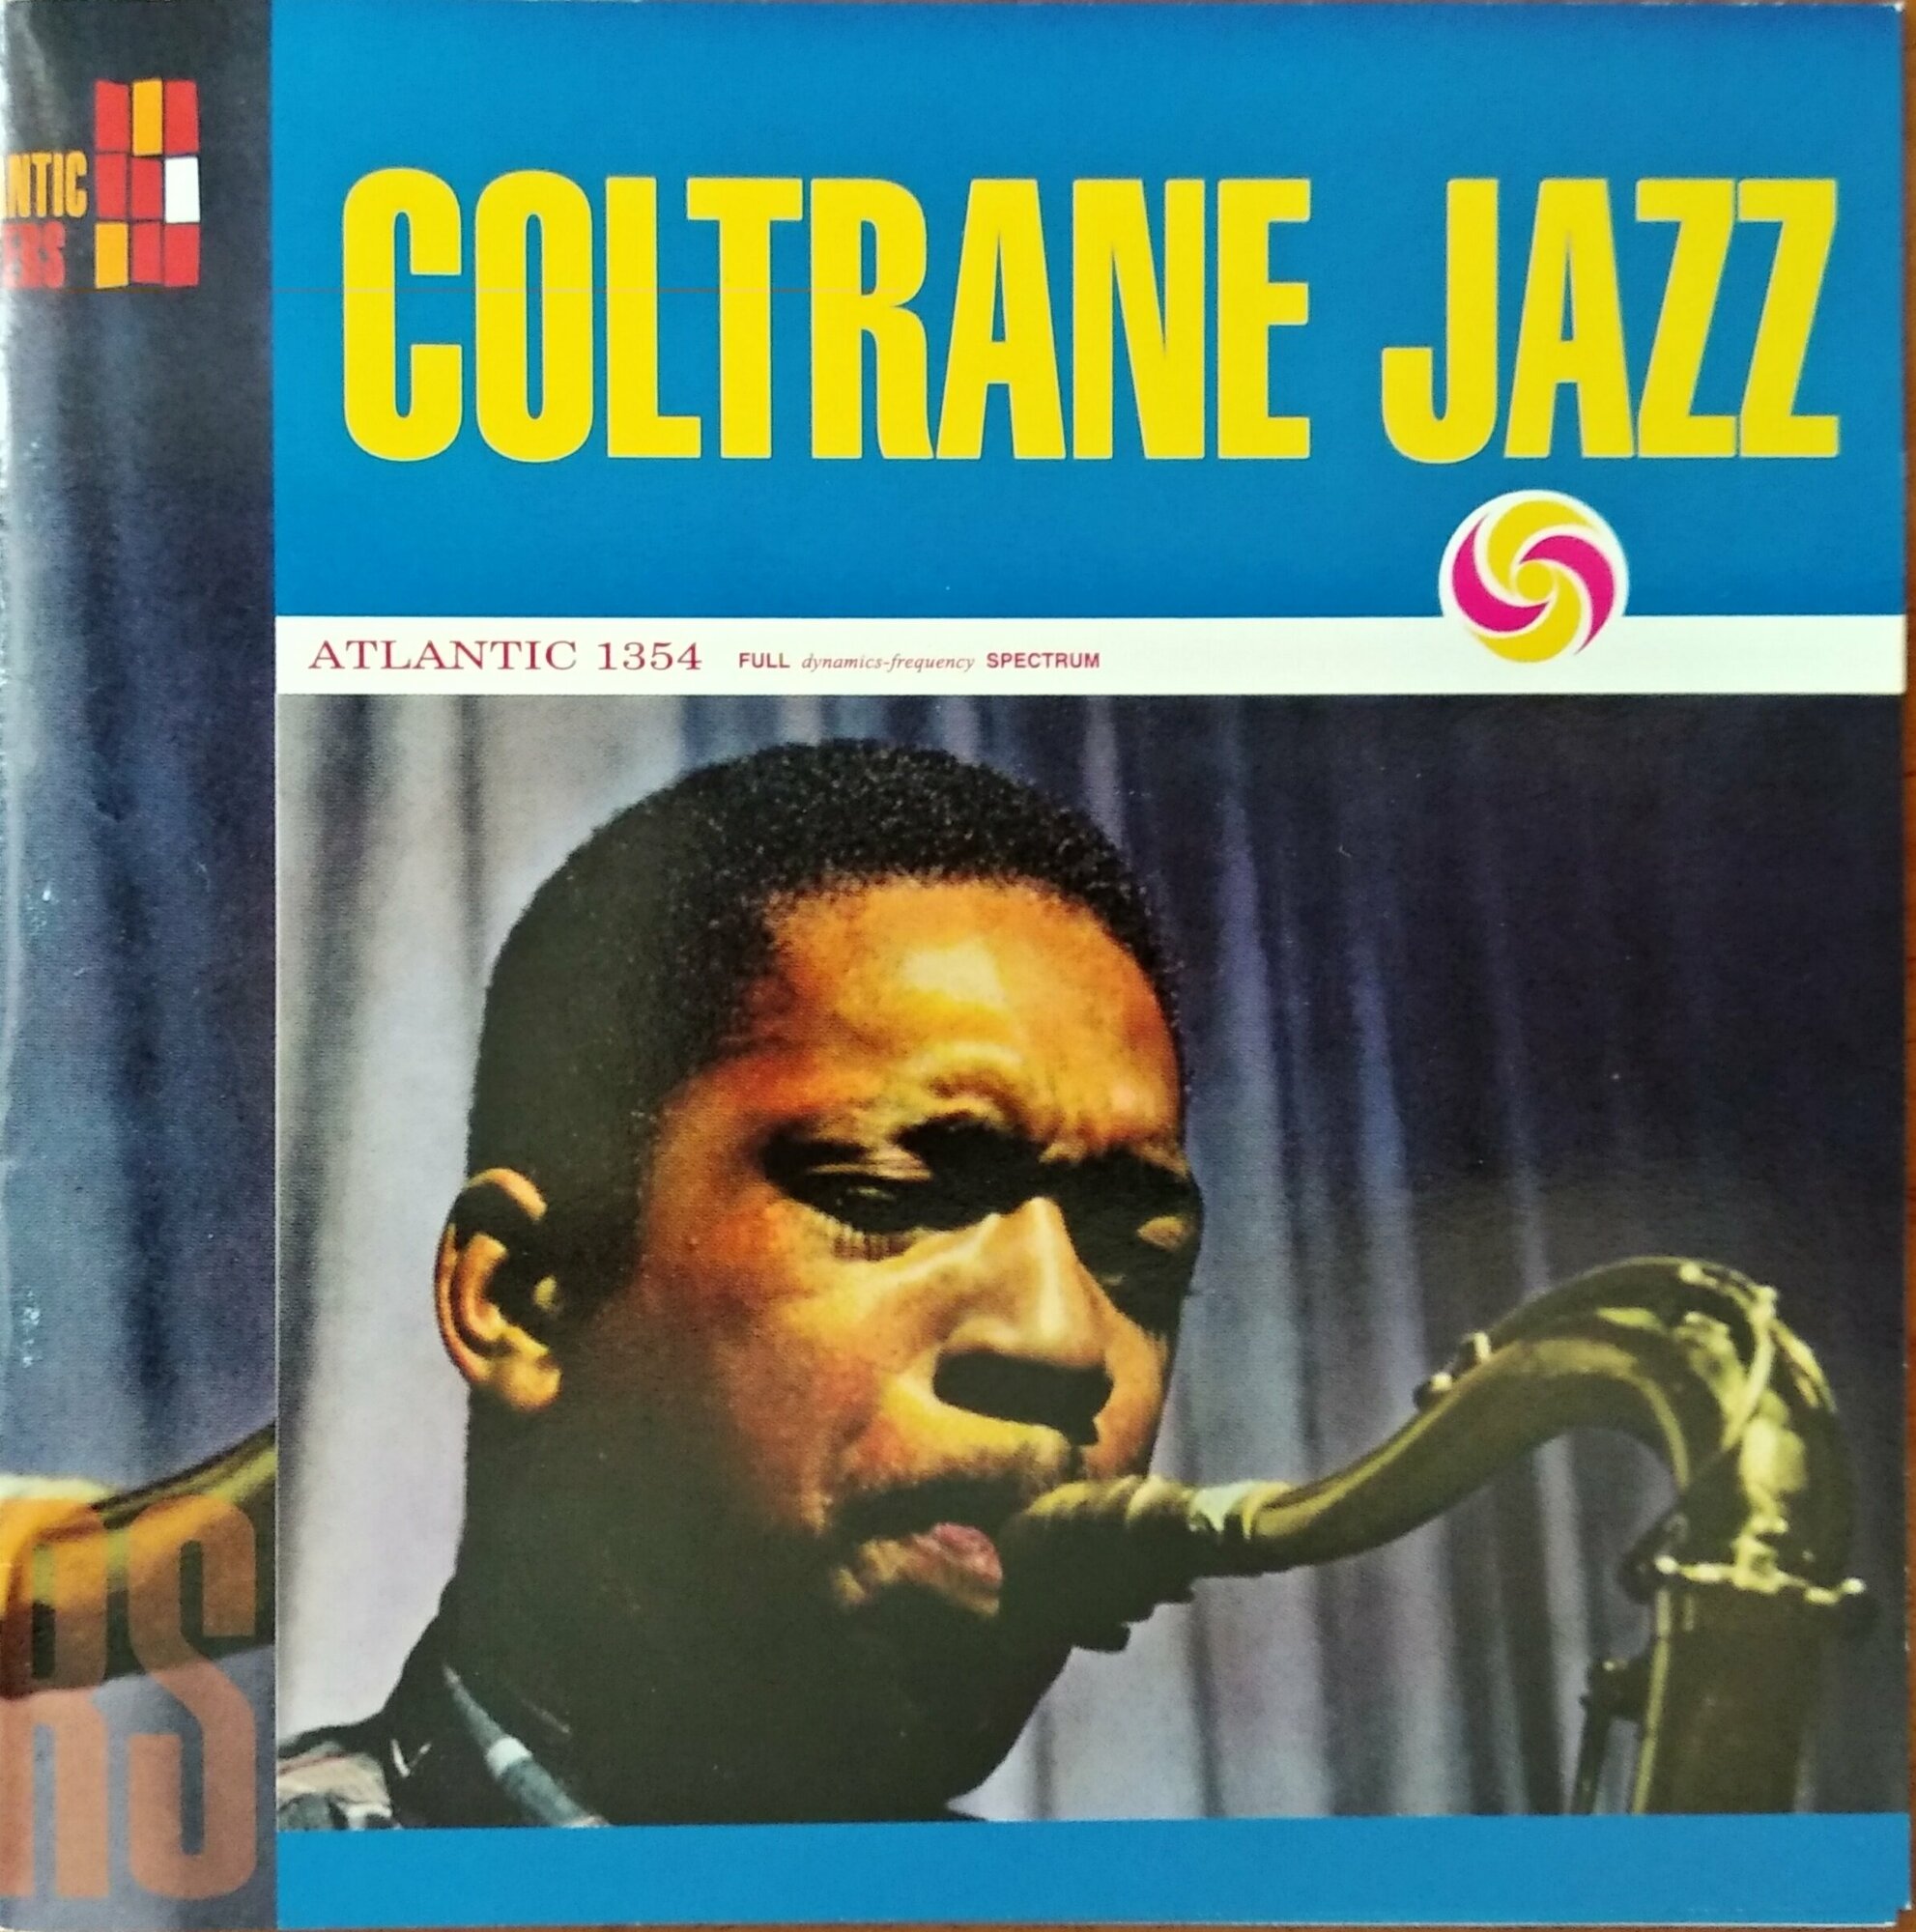 John Coltrane "Coltrane Jazz"